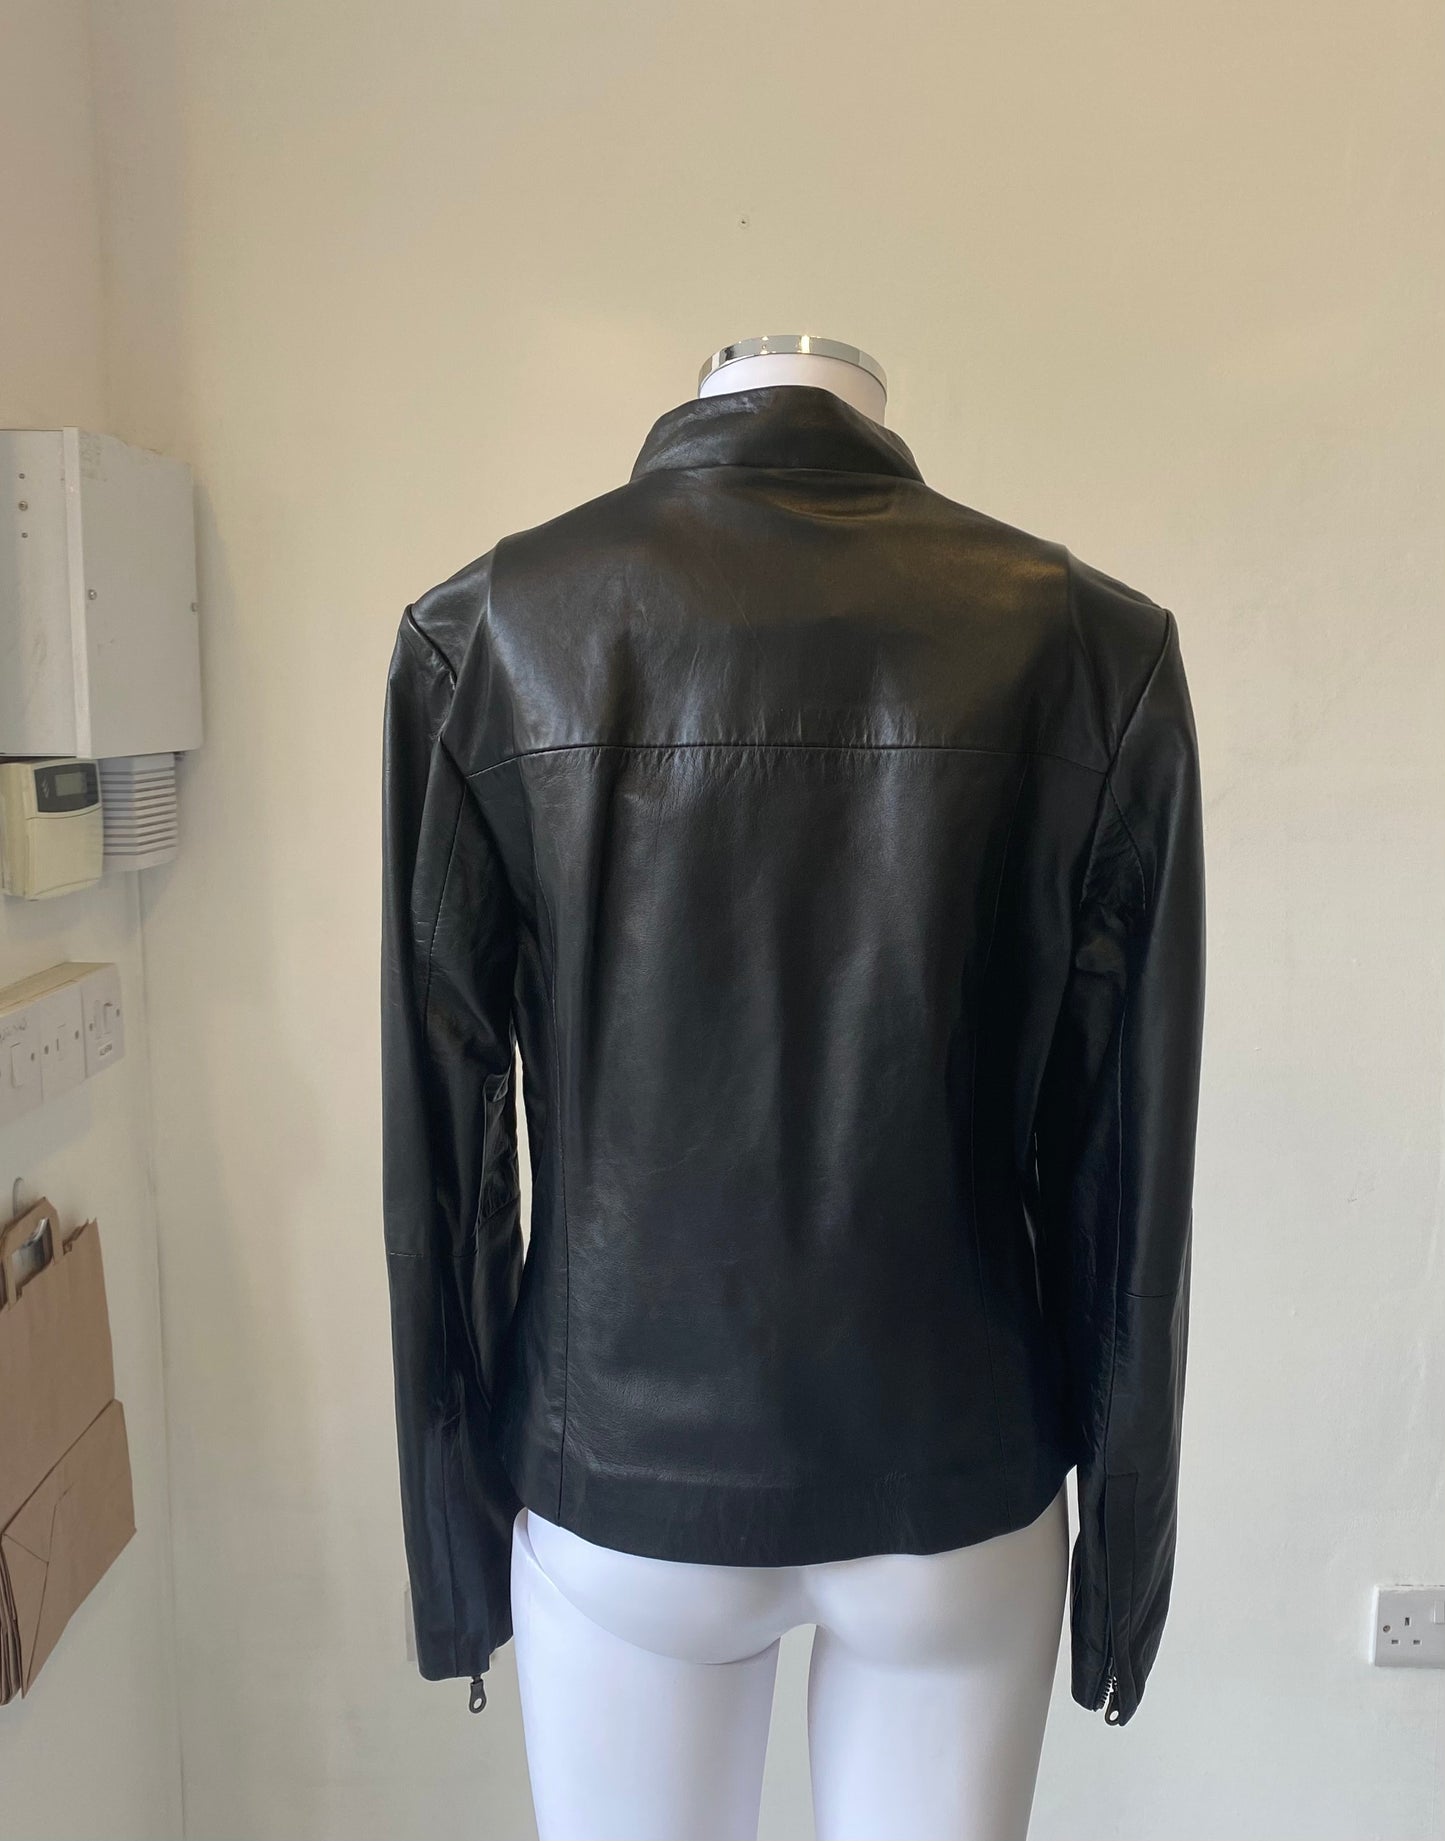 KIT Leather Jacket Size 12